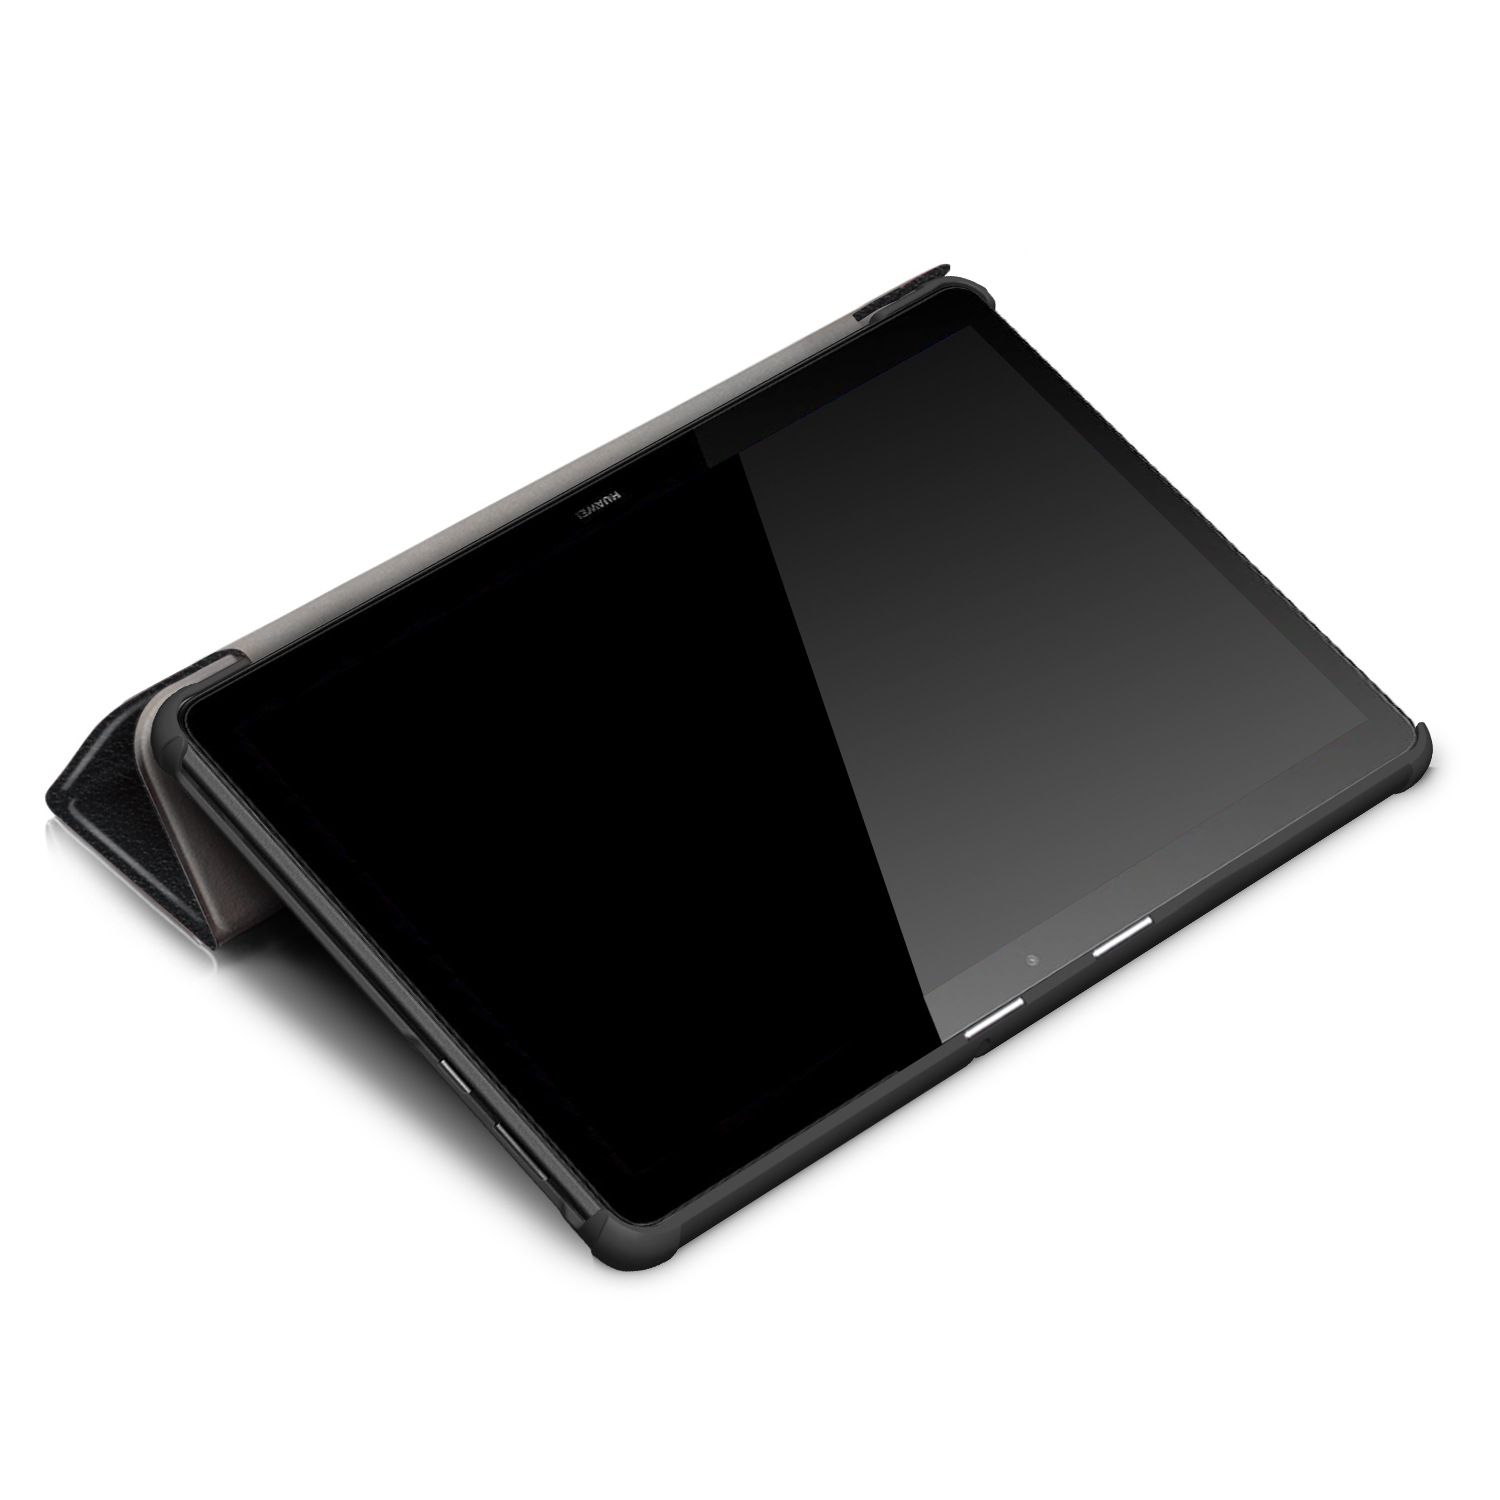 Bao Da Cover Cho Máy Tính Bảng Huawei Mediapad T5 10.1 inch Hỗ Trợ Smart Cover